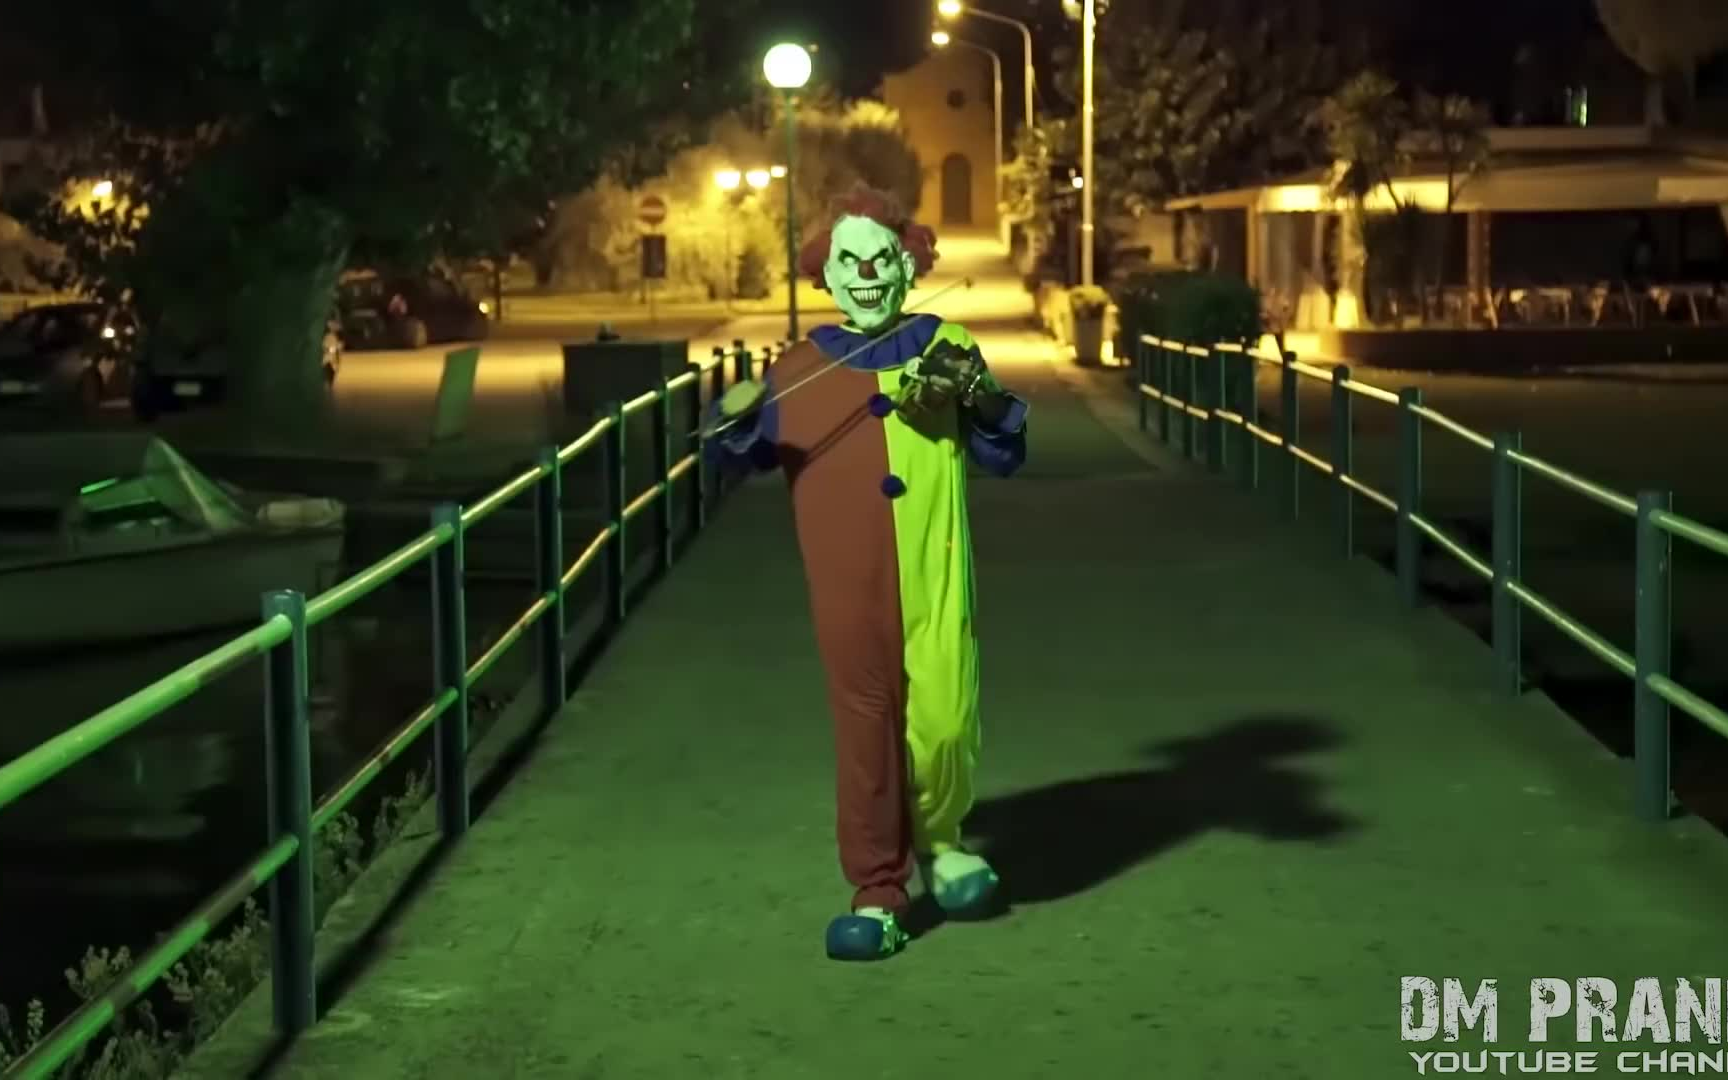 【搬运】Killer Clown 3 - The Uncle! Scare Prank--YouTube